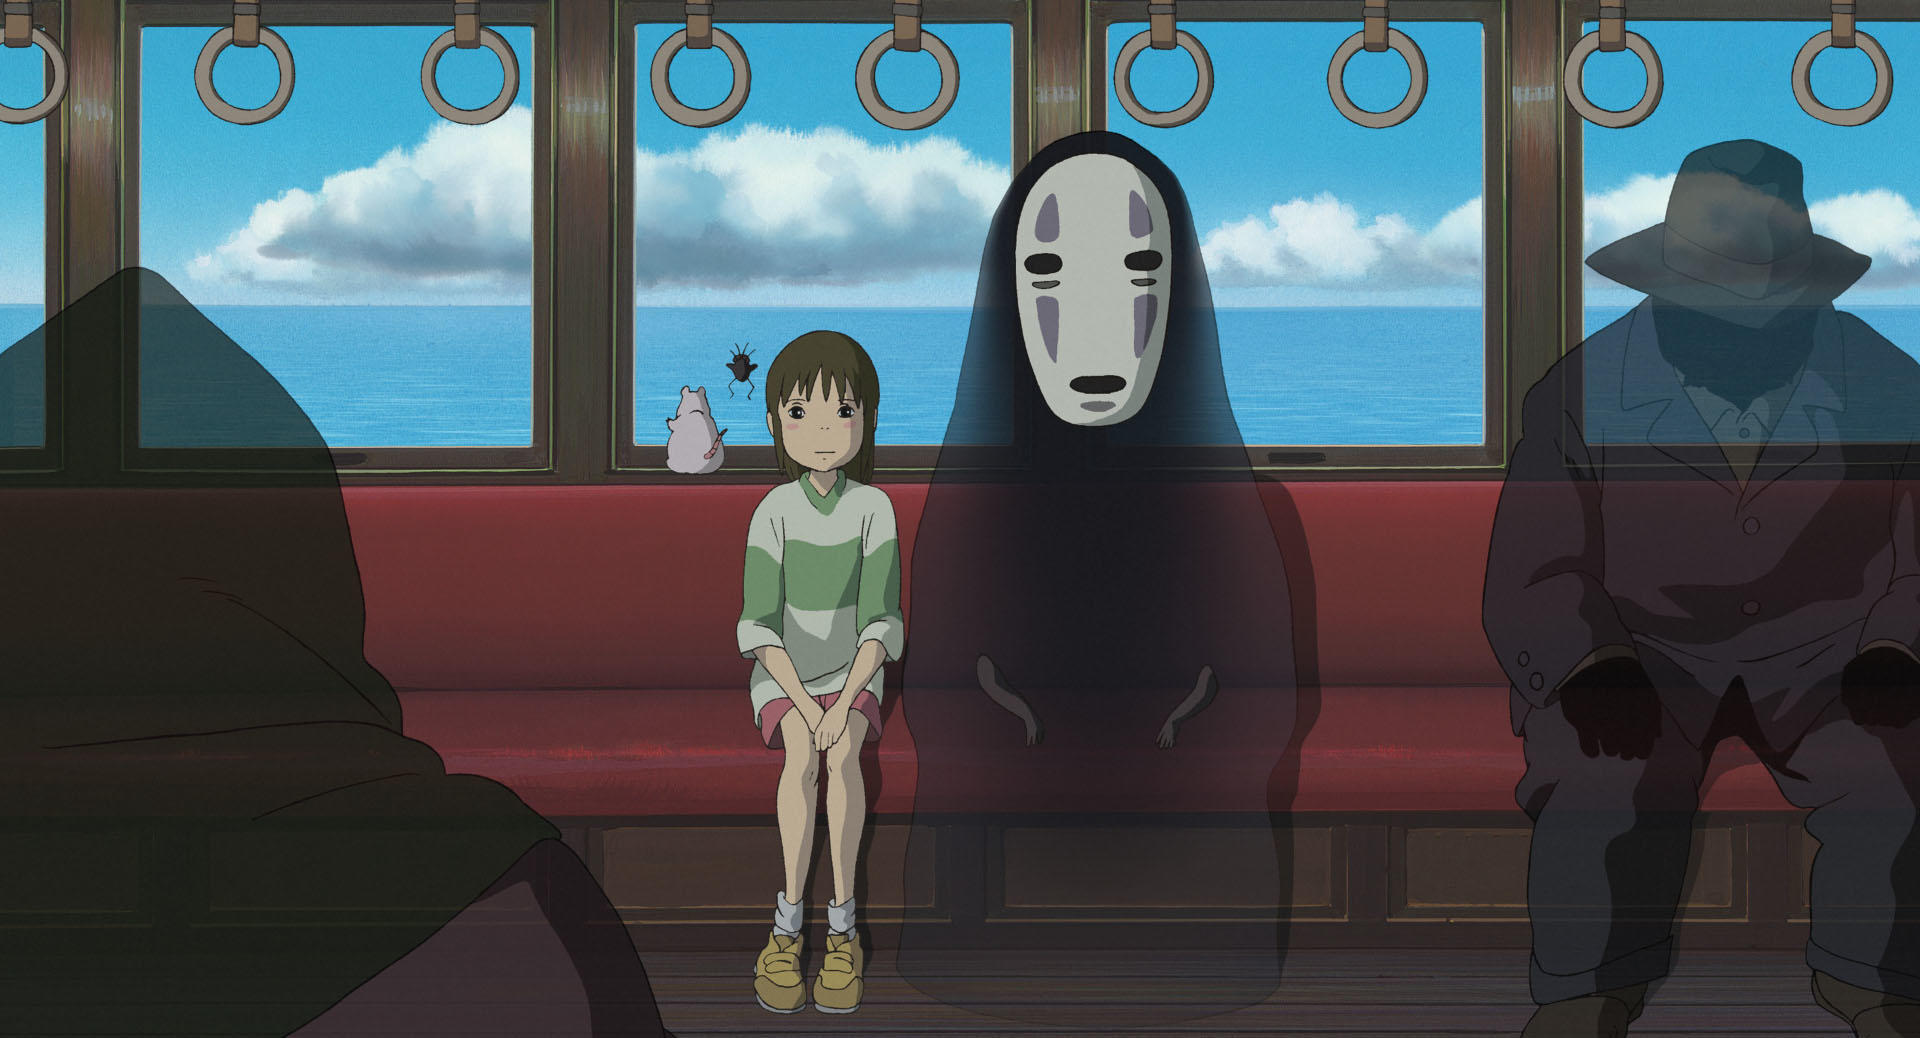 Jet tæerne jord 10 best Studio Ghibli films | Time Out Tokyo